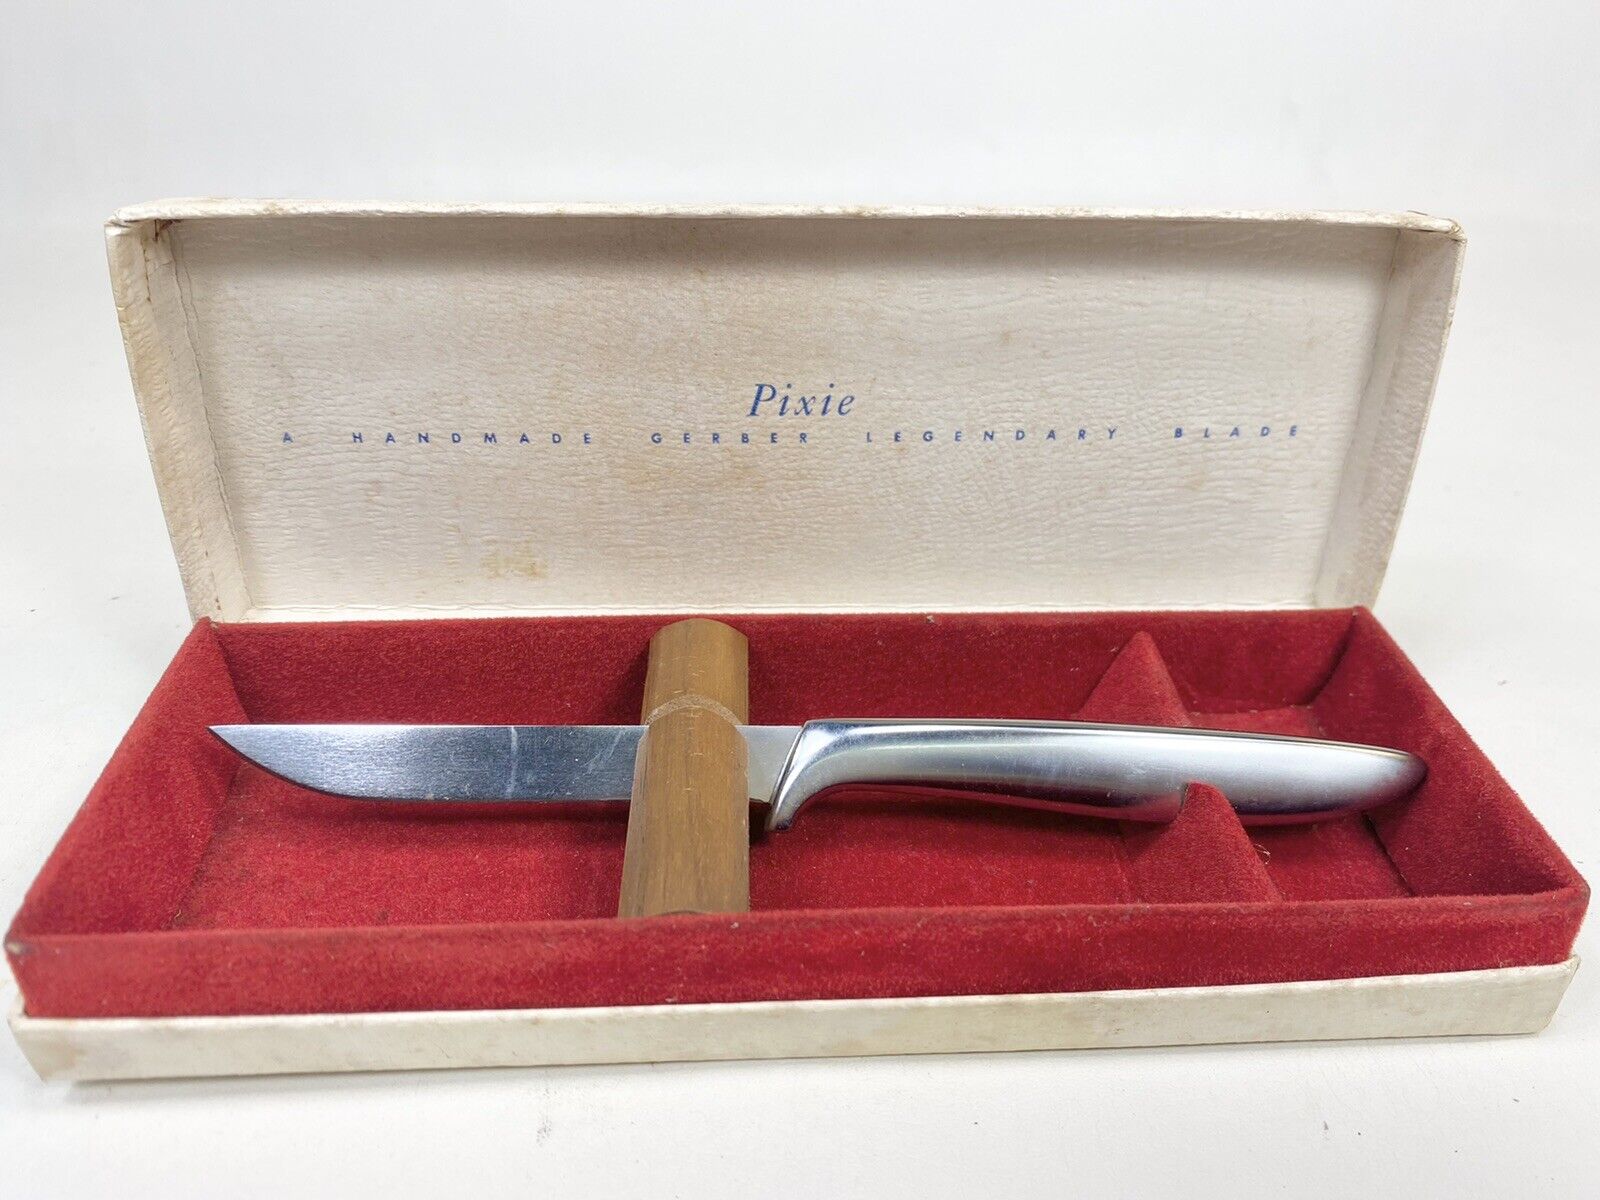 GERBER PIXIE KNIFE IN BOX